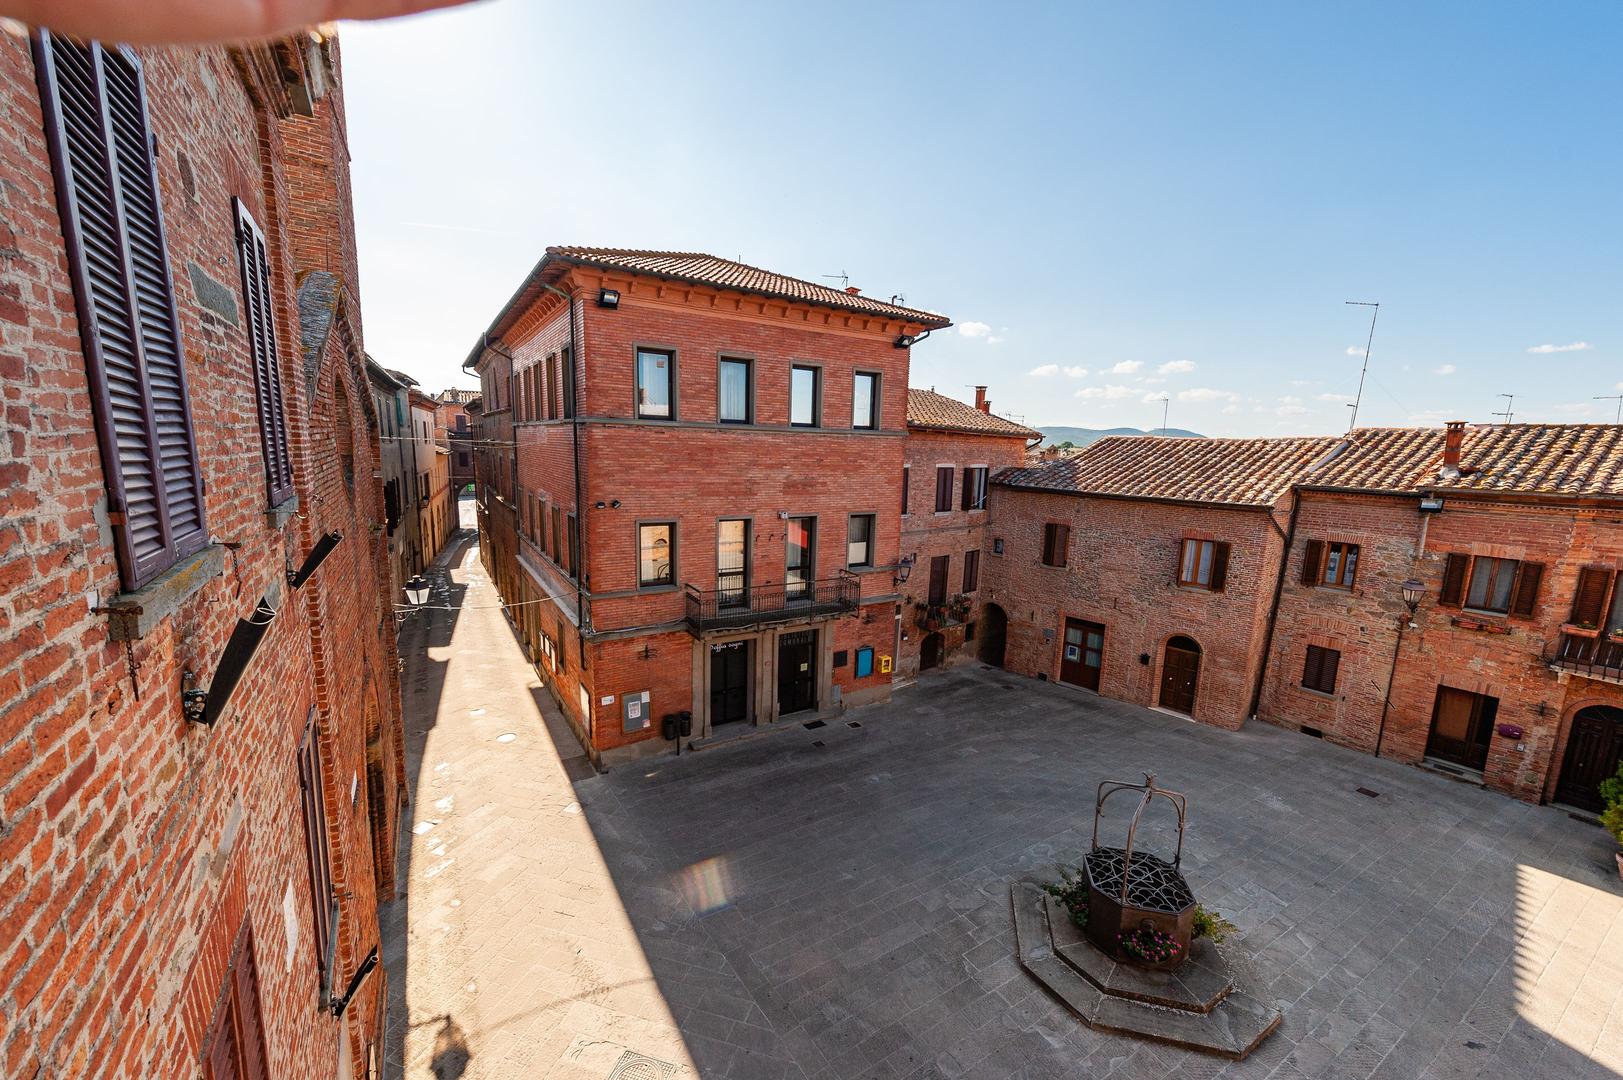 Centro storico di Torrita di Siena. Piazza